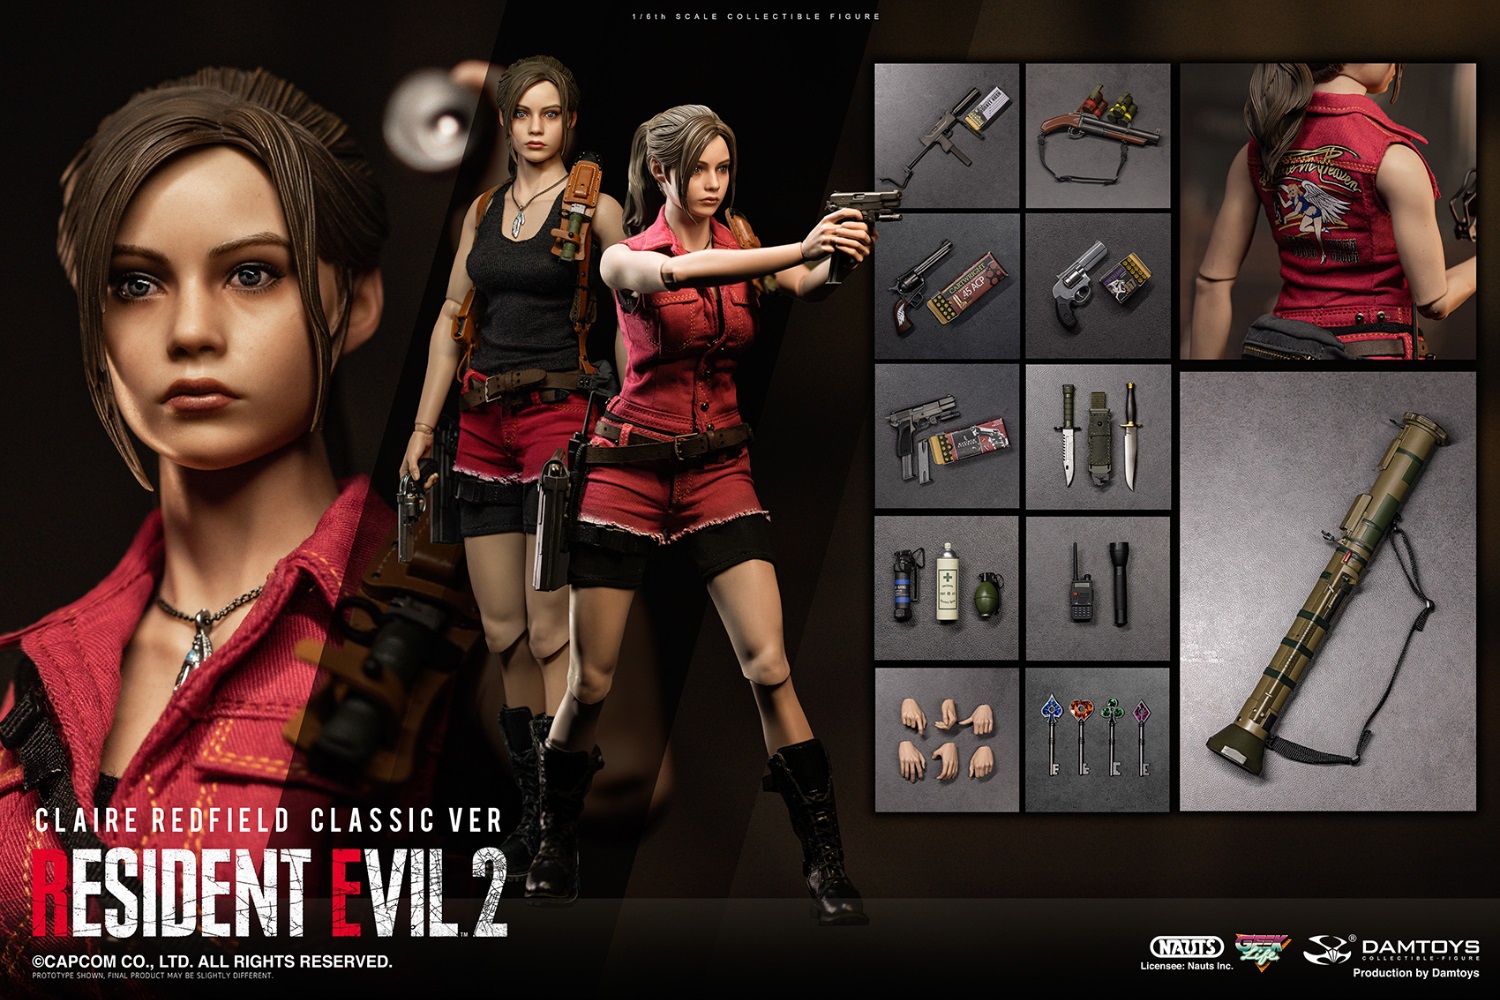 DAMTOYS DMS031 1/6 Resident Evil 2 Remake Ver. Claire Redfield Figure Model  Gift